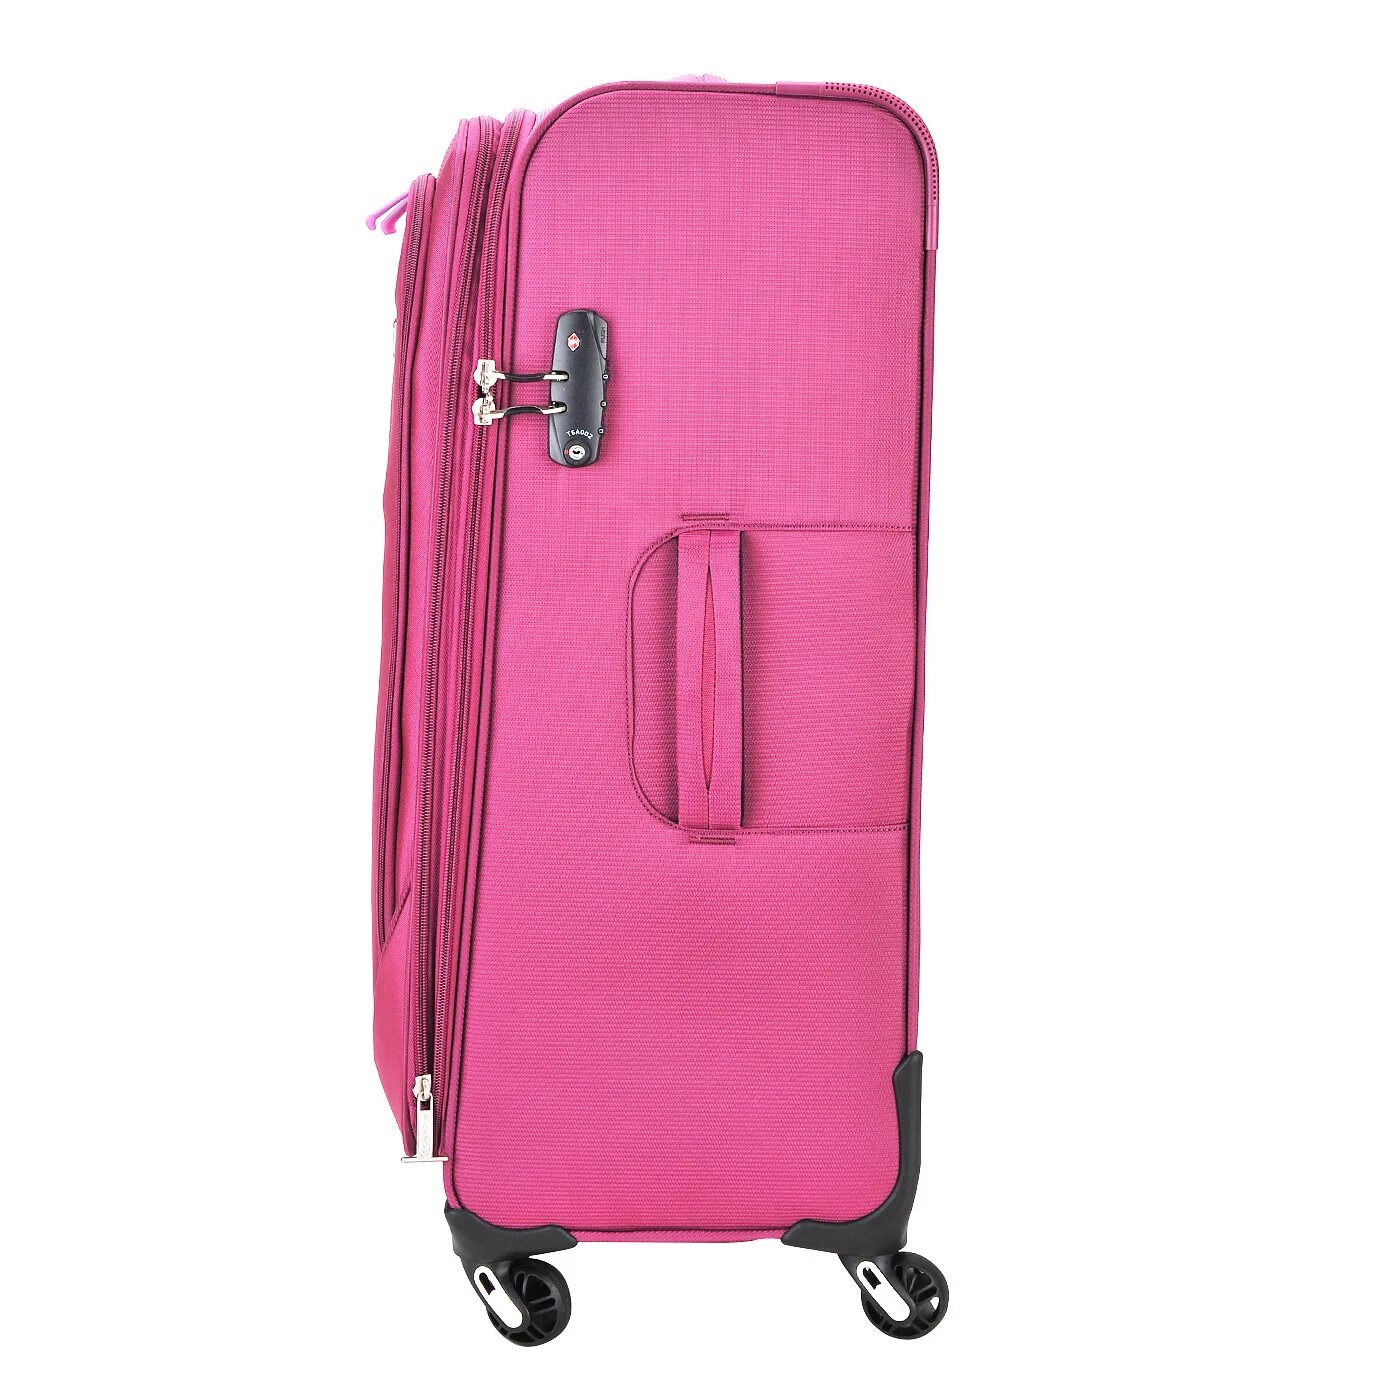 Где купить недорогой чемодан. Чемодан тканевый. Чемодан на колесах тканевый. Розовый чемодан. Средний чемодан розовый.